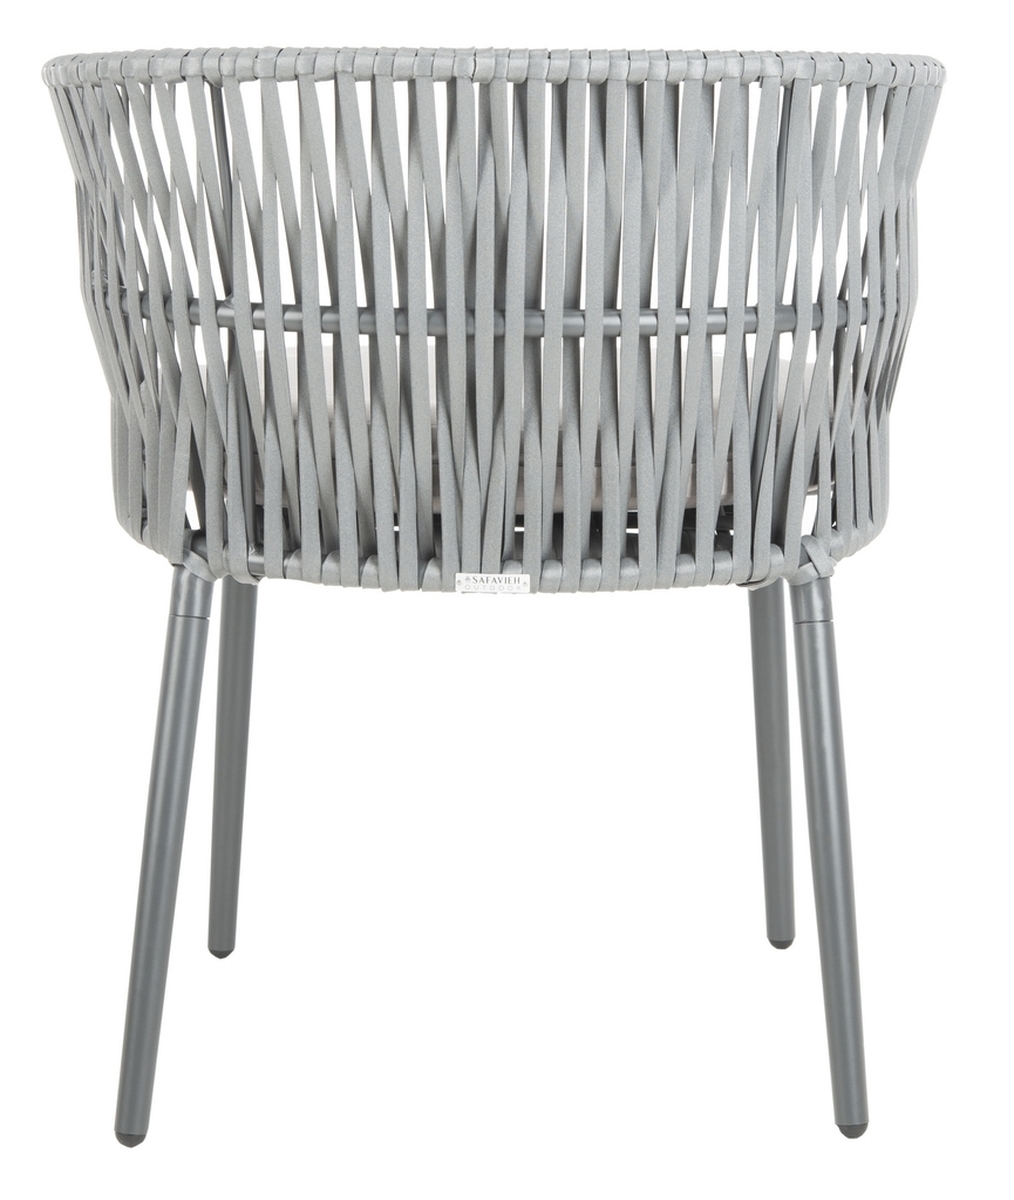 Kiyan Rope Chair - Grey/Grey Cushion - Safavieh - Image 5